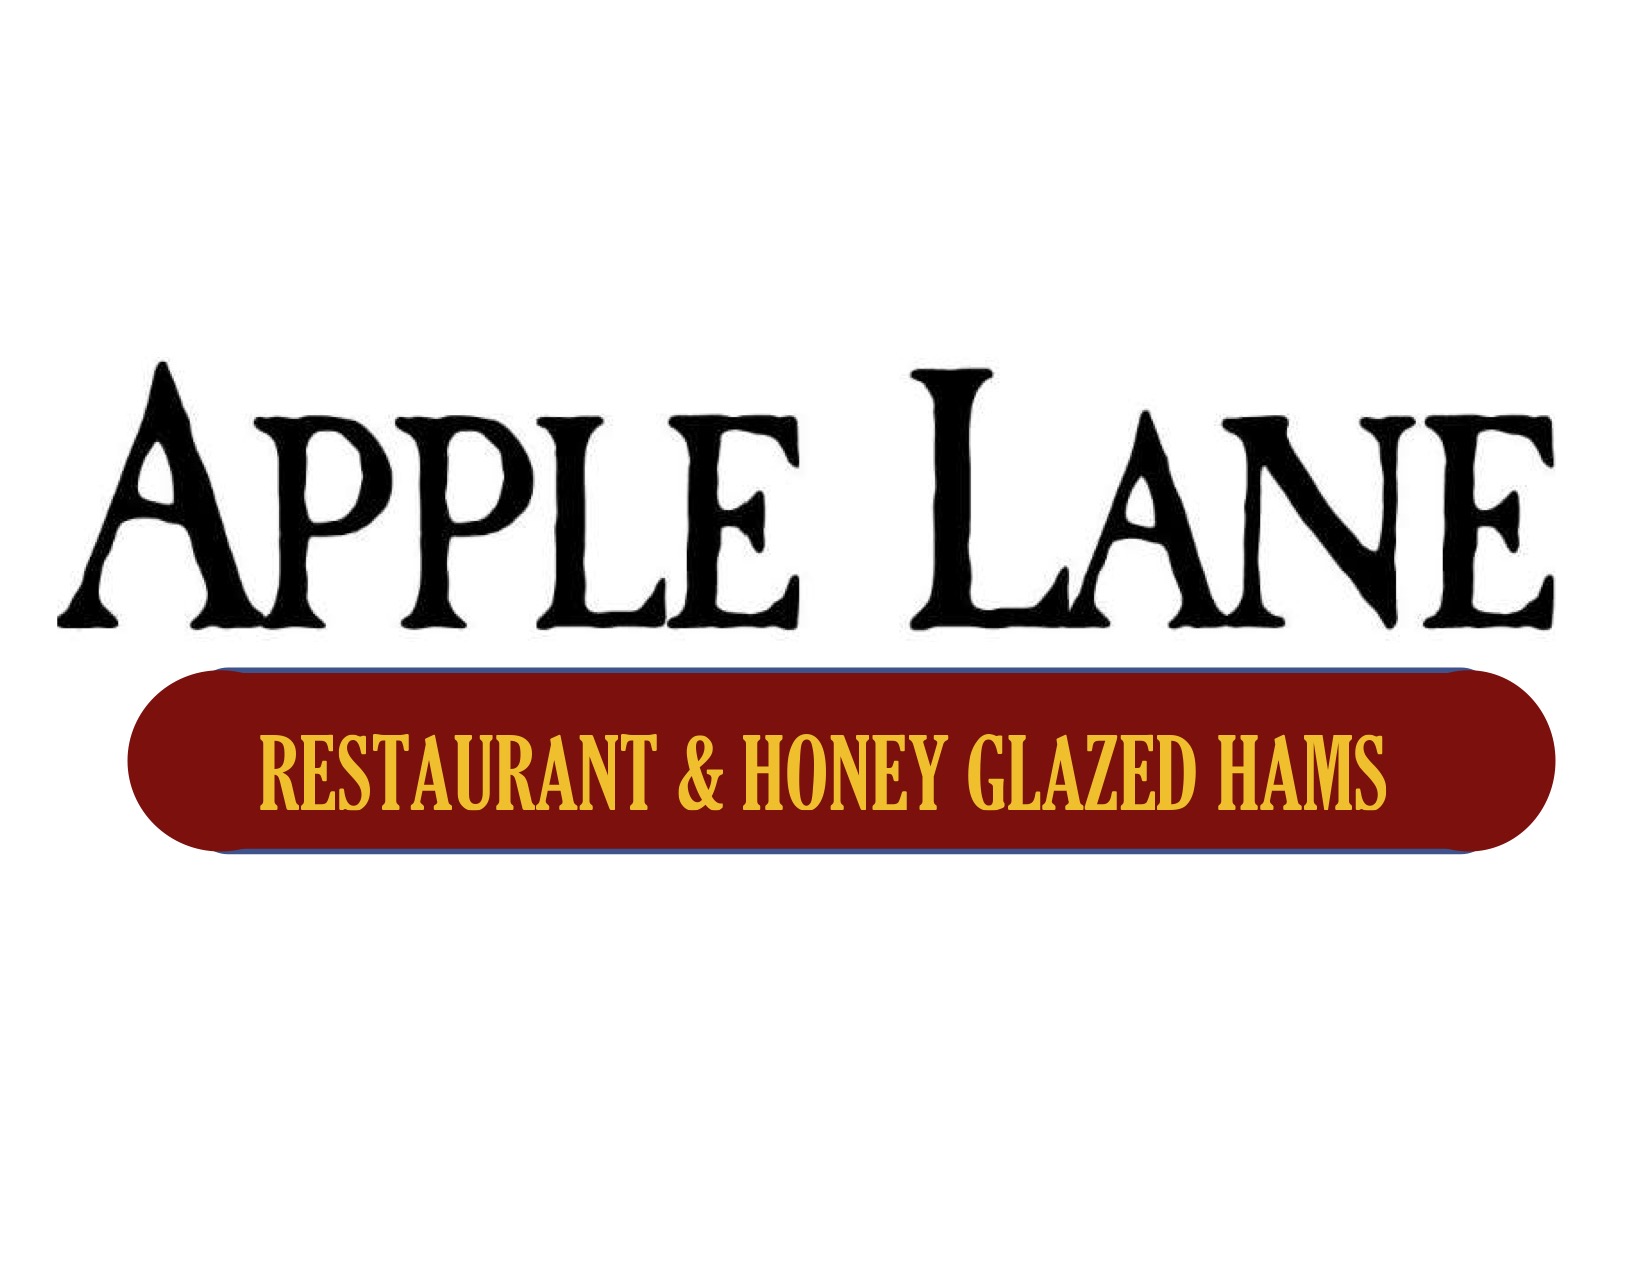 Apple Lane Farms